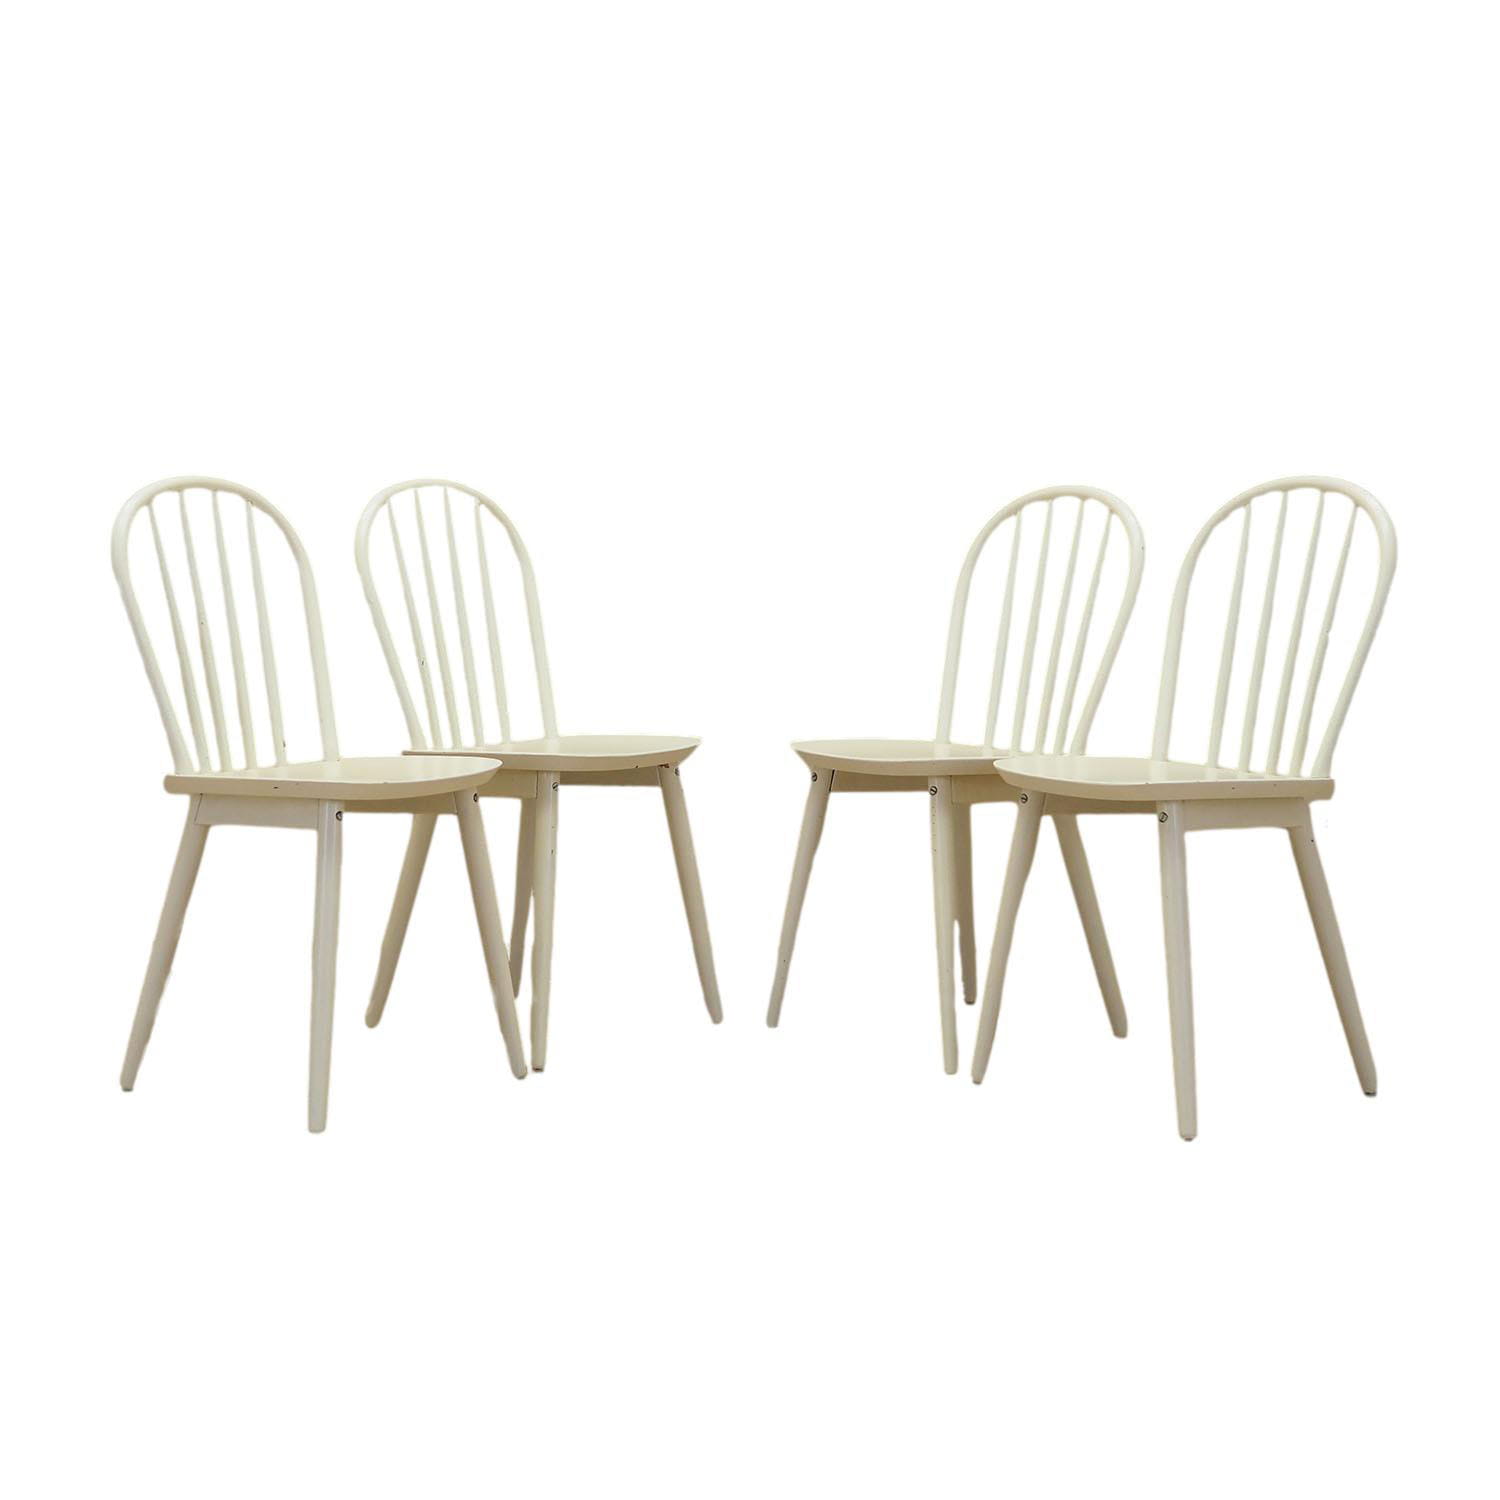 4x Stuhl Buchenholz Weiß 1970er Jahre